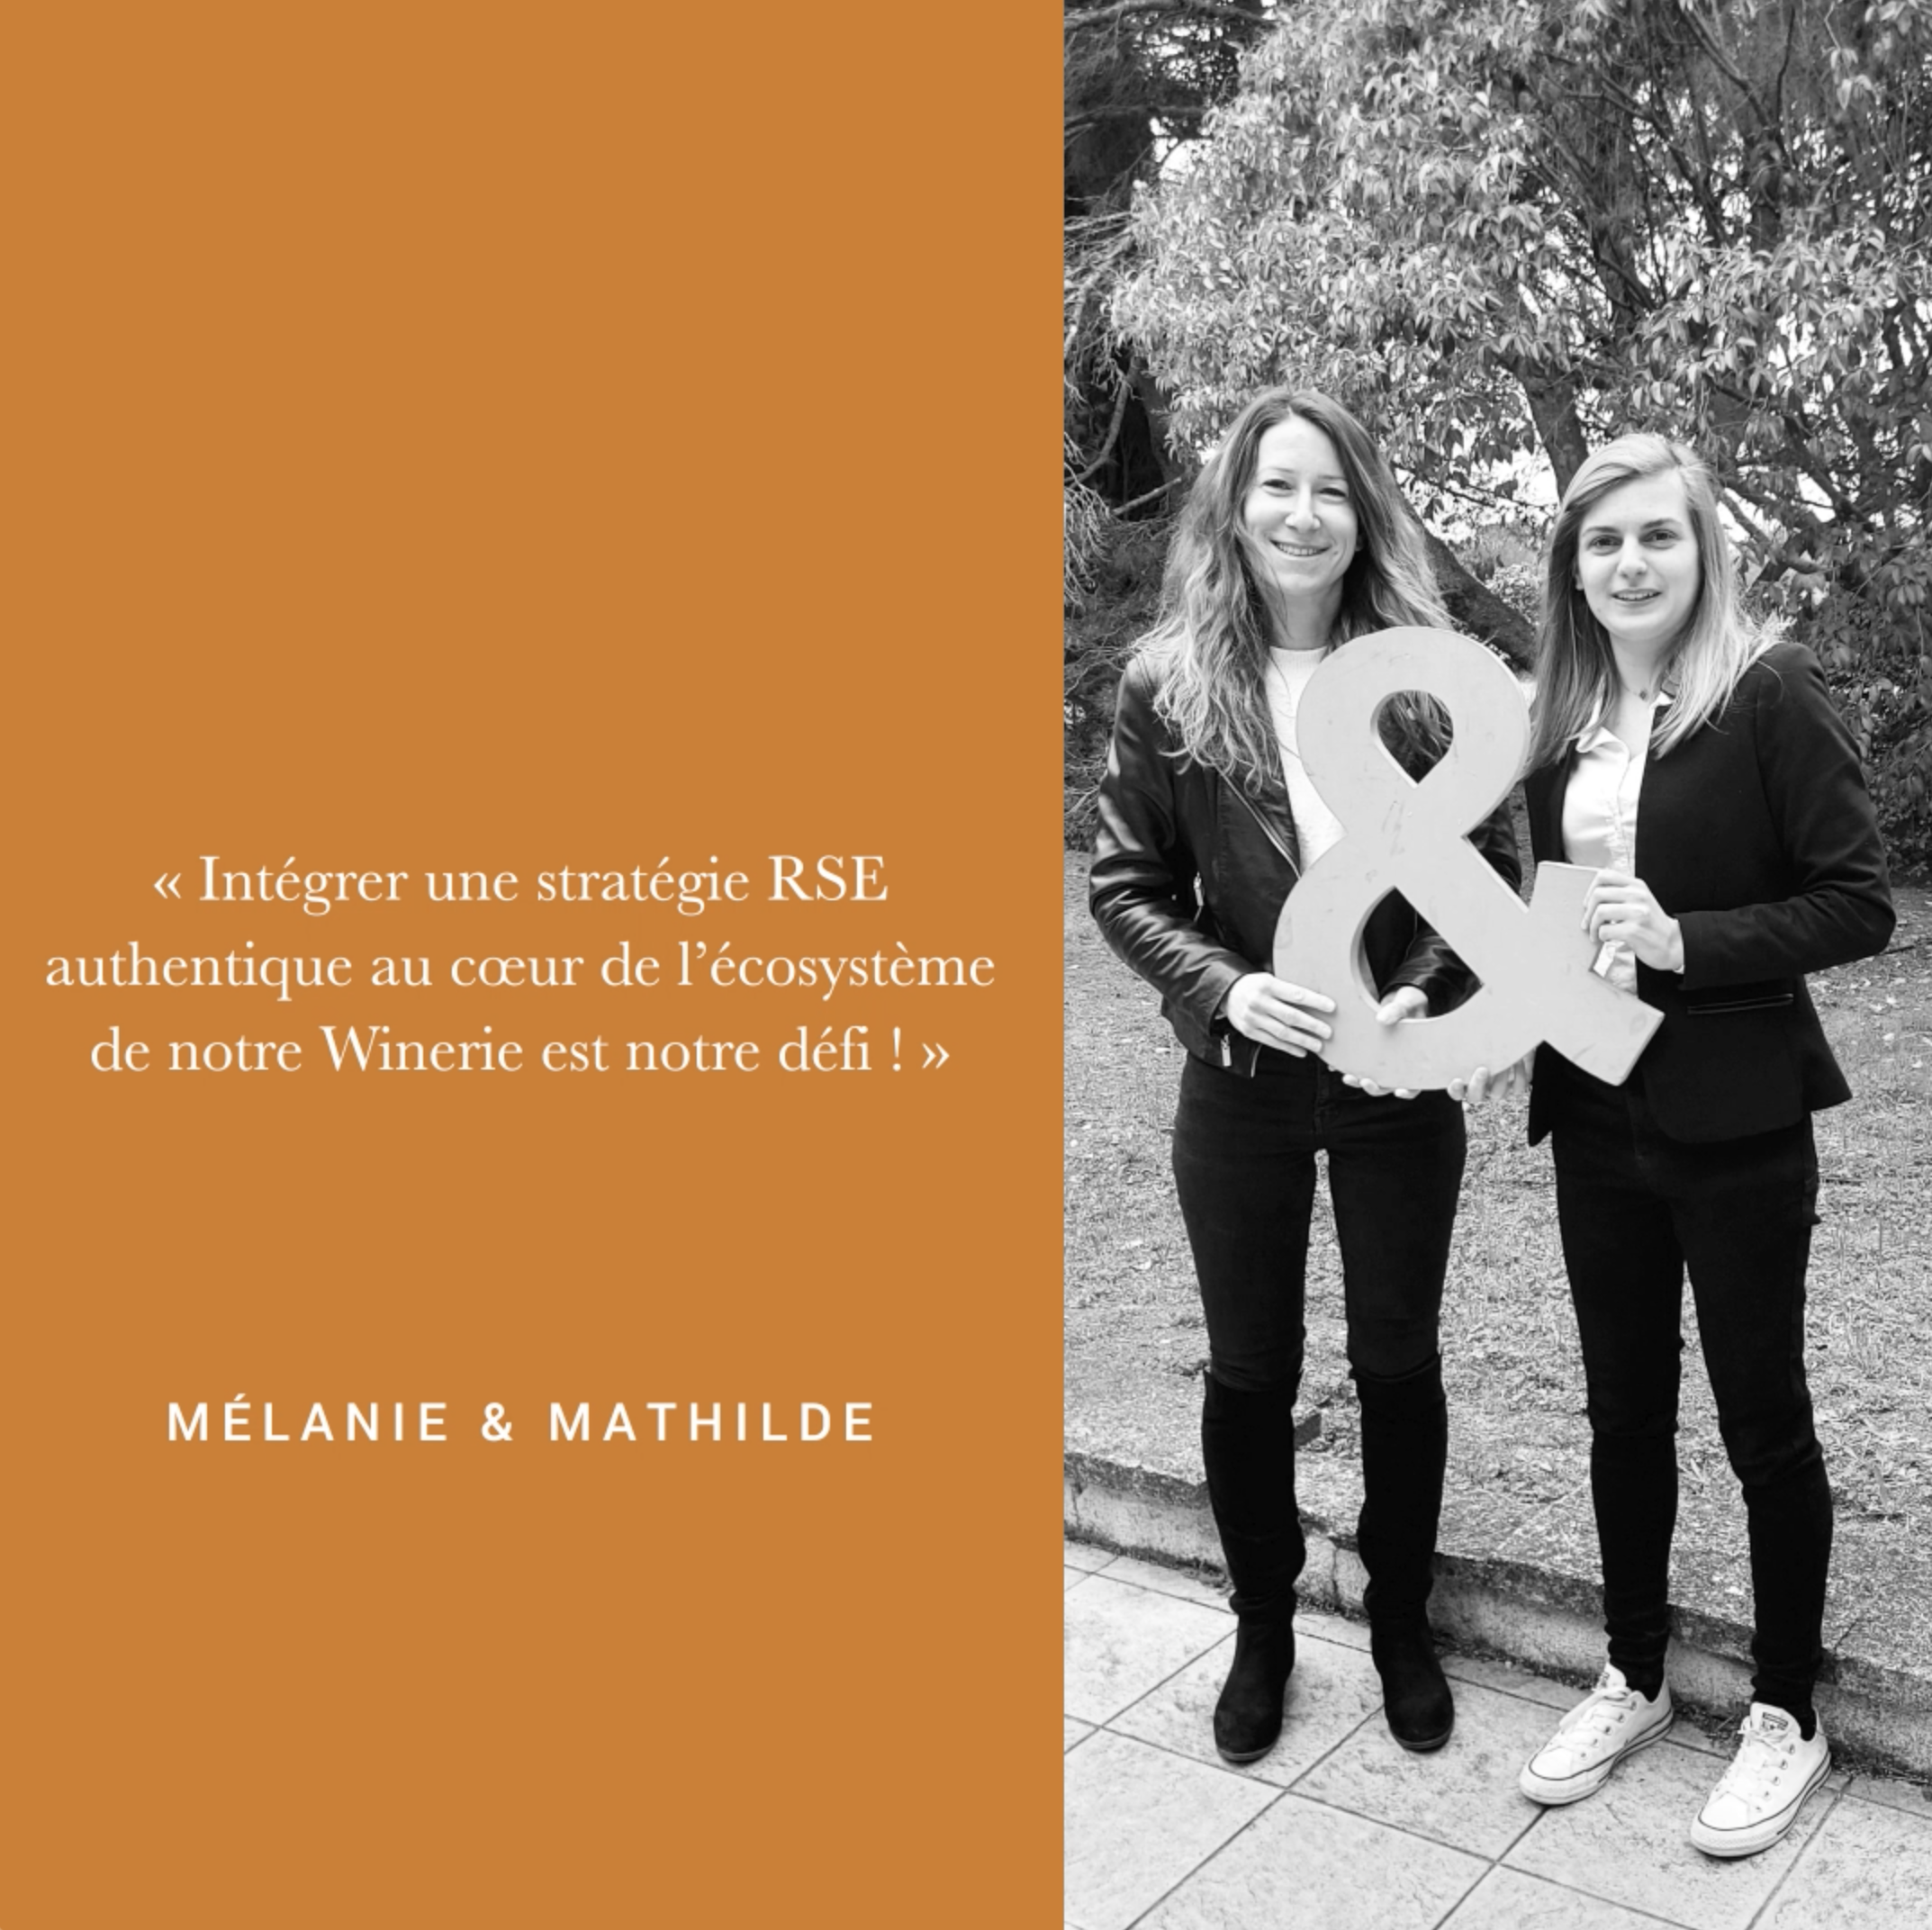 Image de couverture - Parole de collaborateur - Mathilde et Mélanie